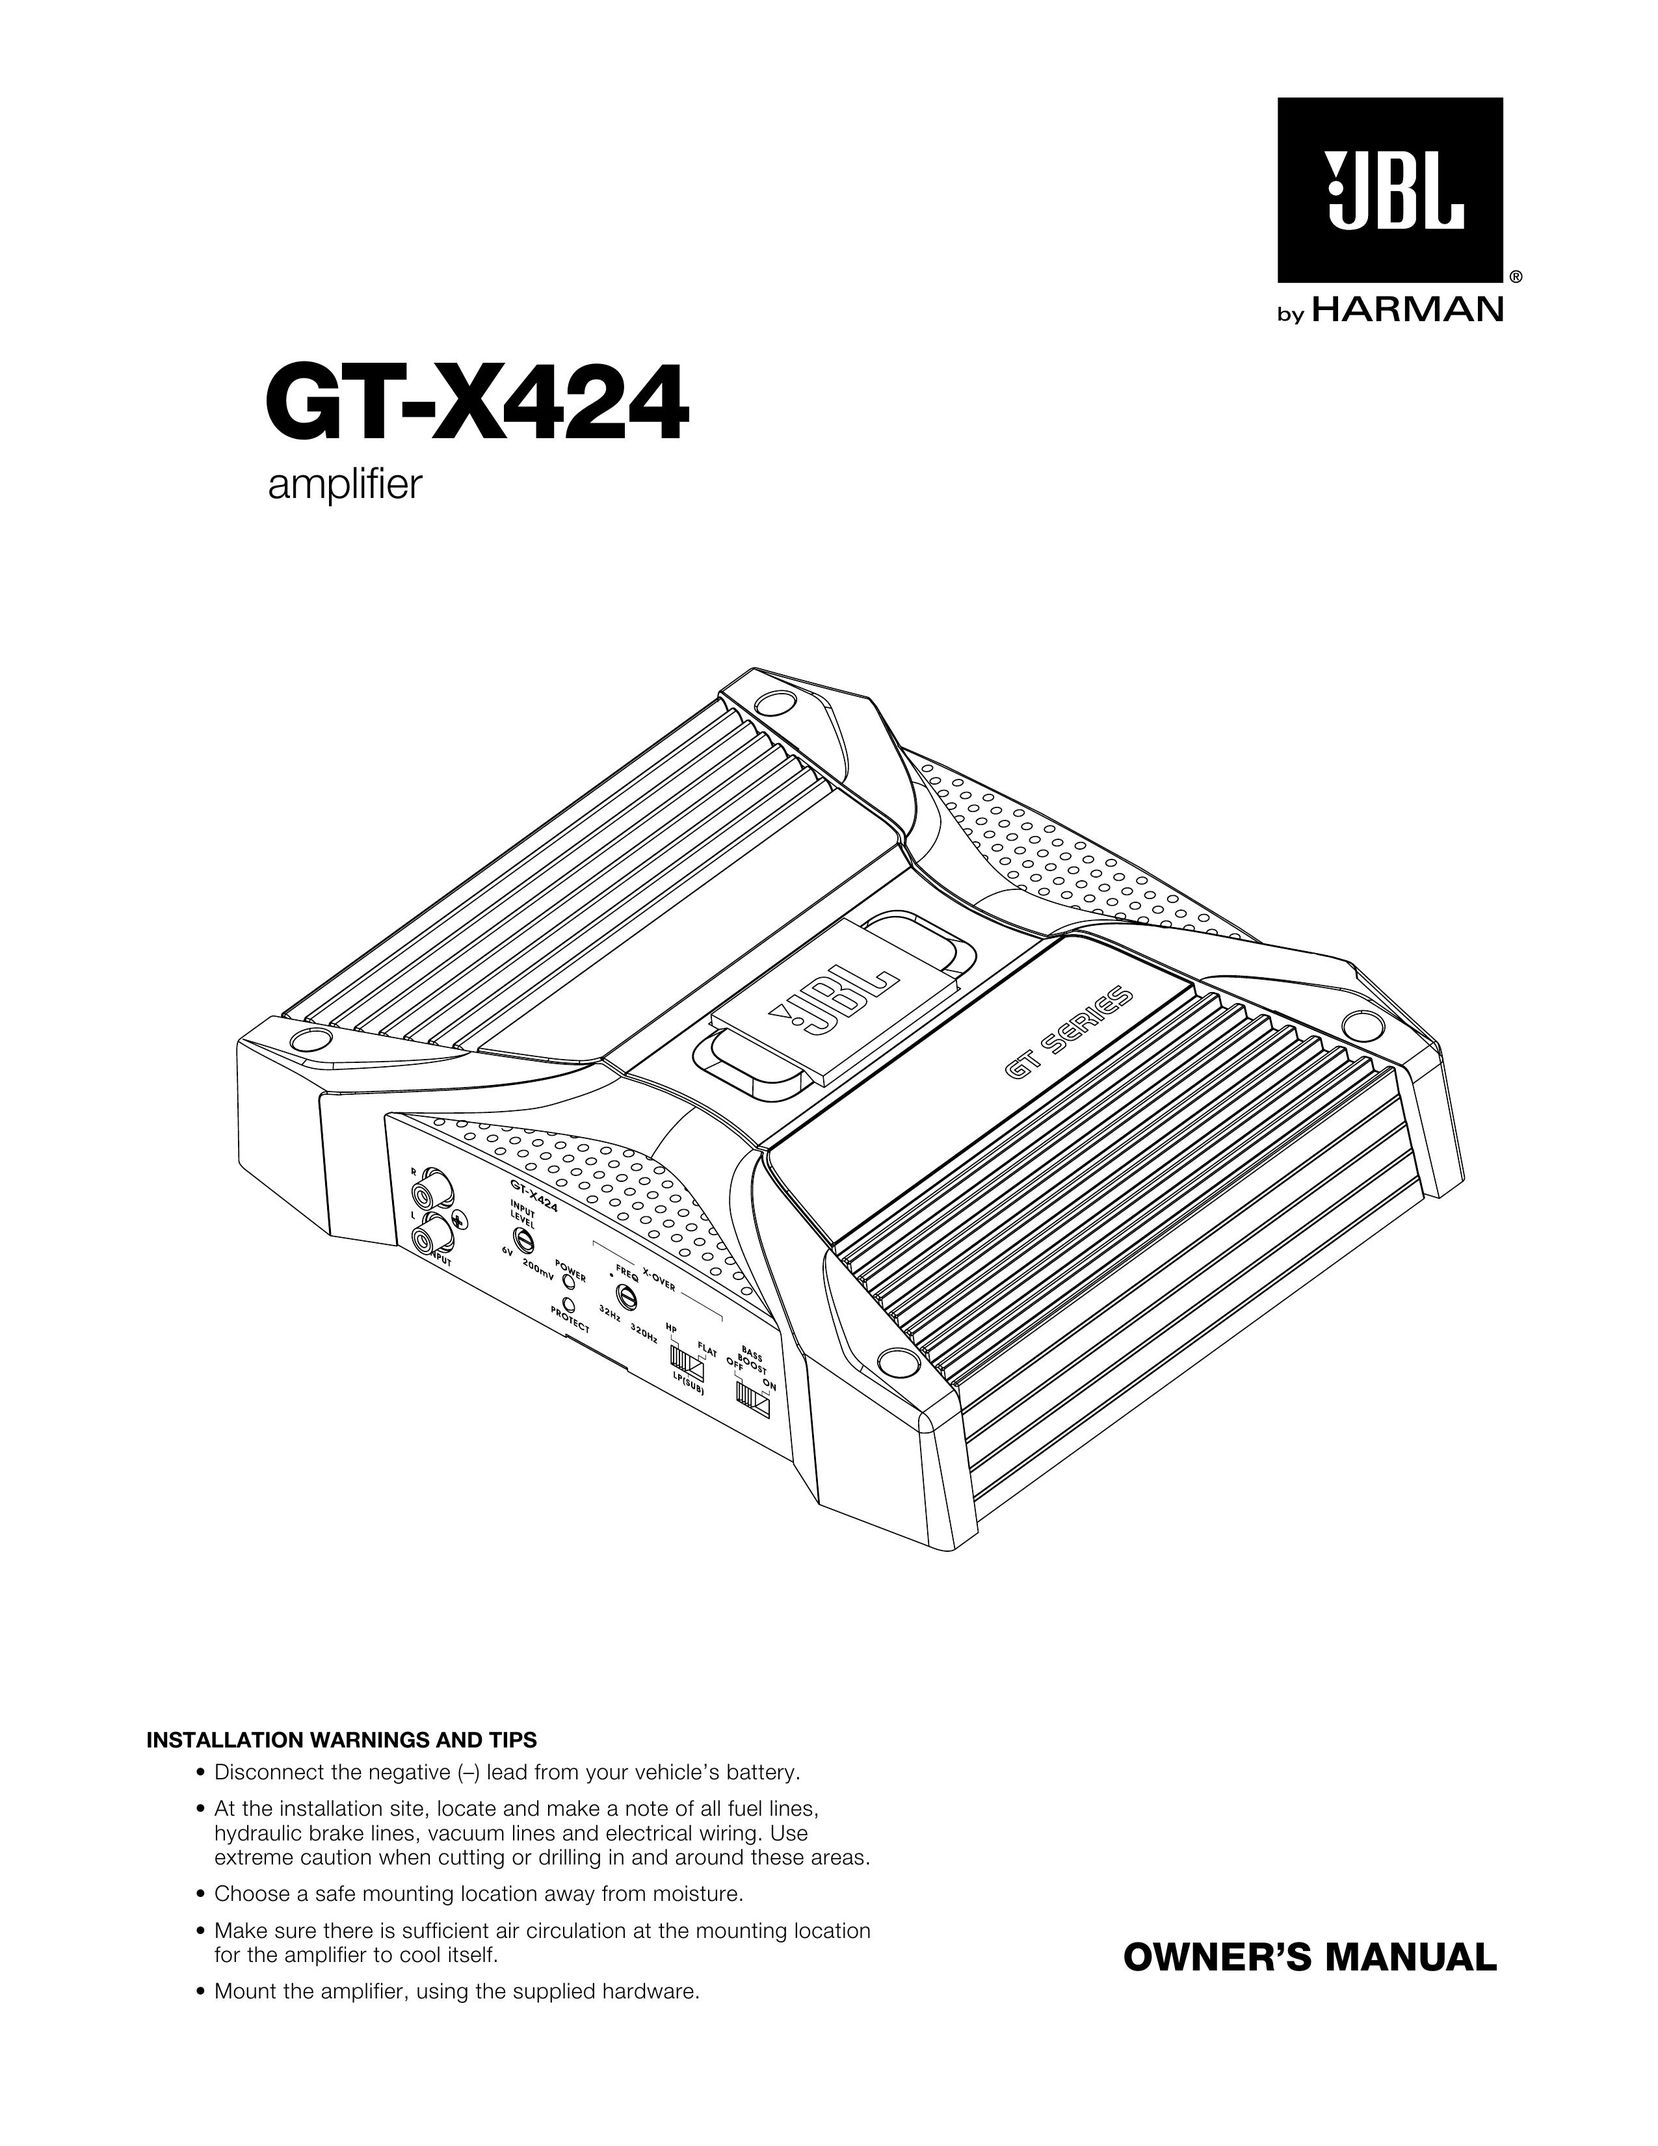 Harman GT-X424 Stereo Amplifier User Manual